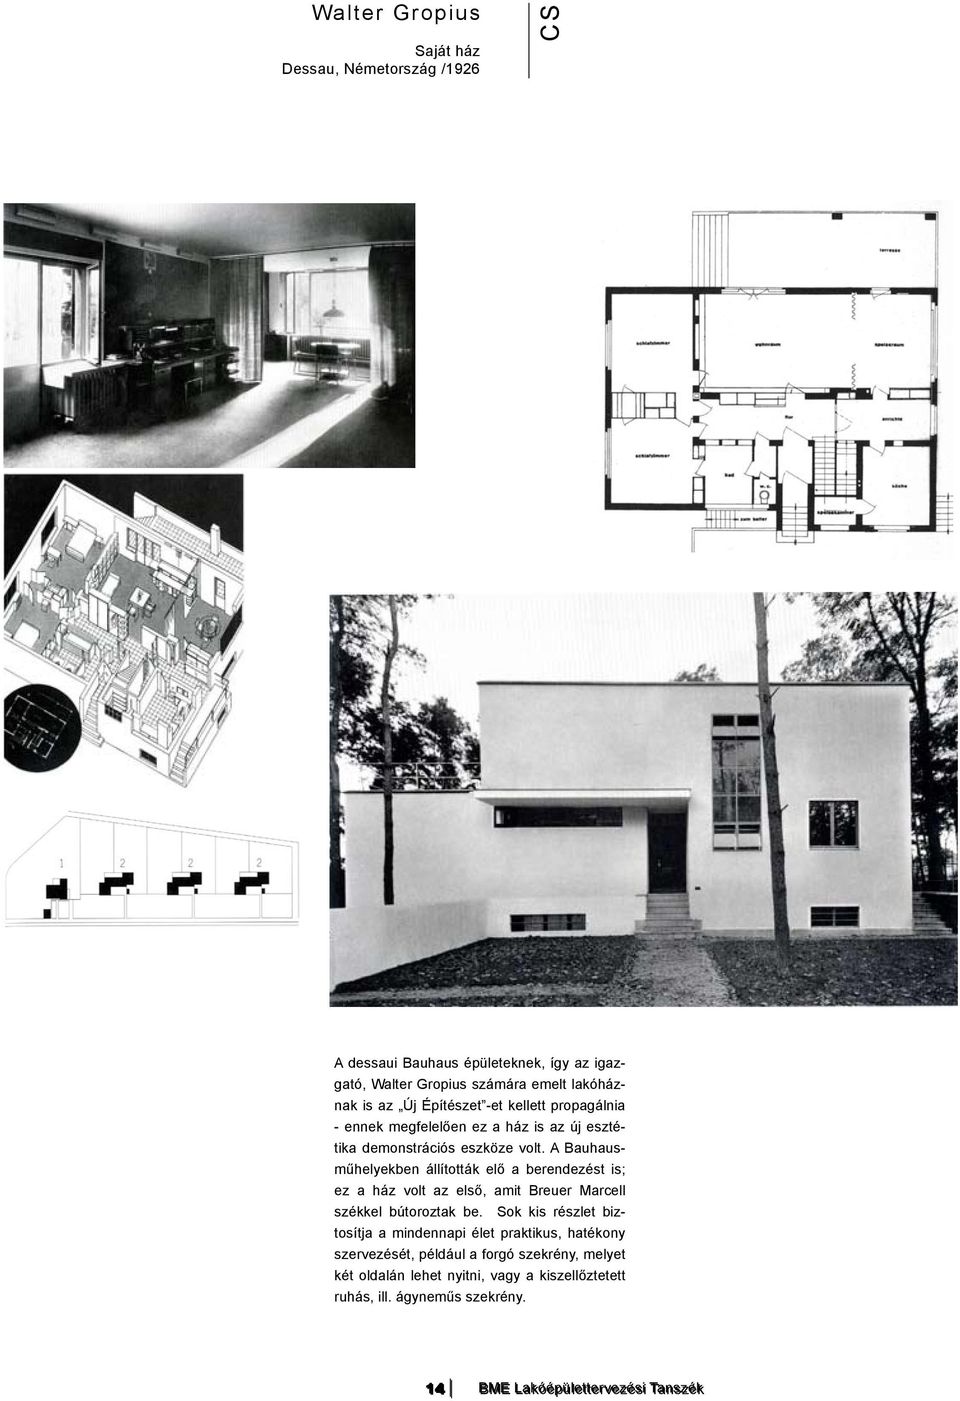 A Bauhausműhelyekben állították elő a berendezést is; ez a ház volt az első, amit Breuer Marcell székkel bútoroztak be.